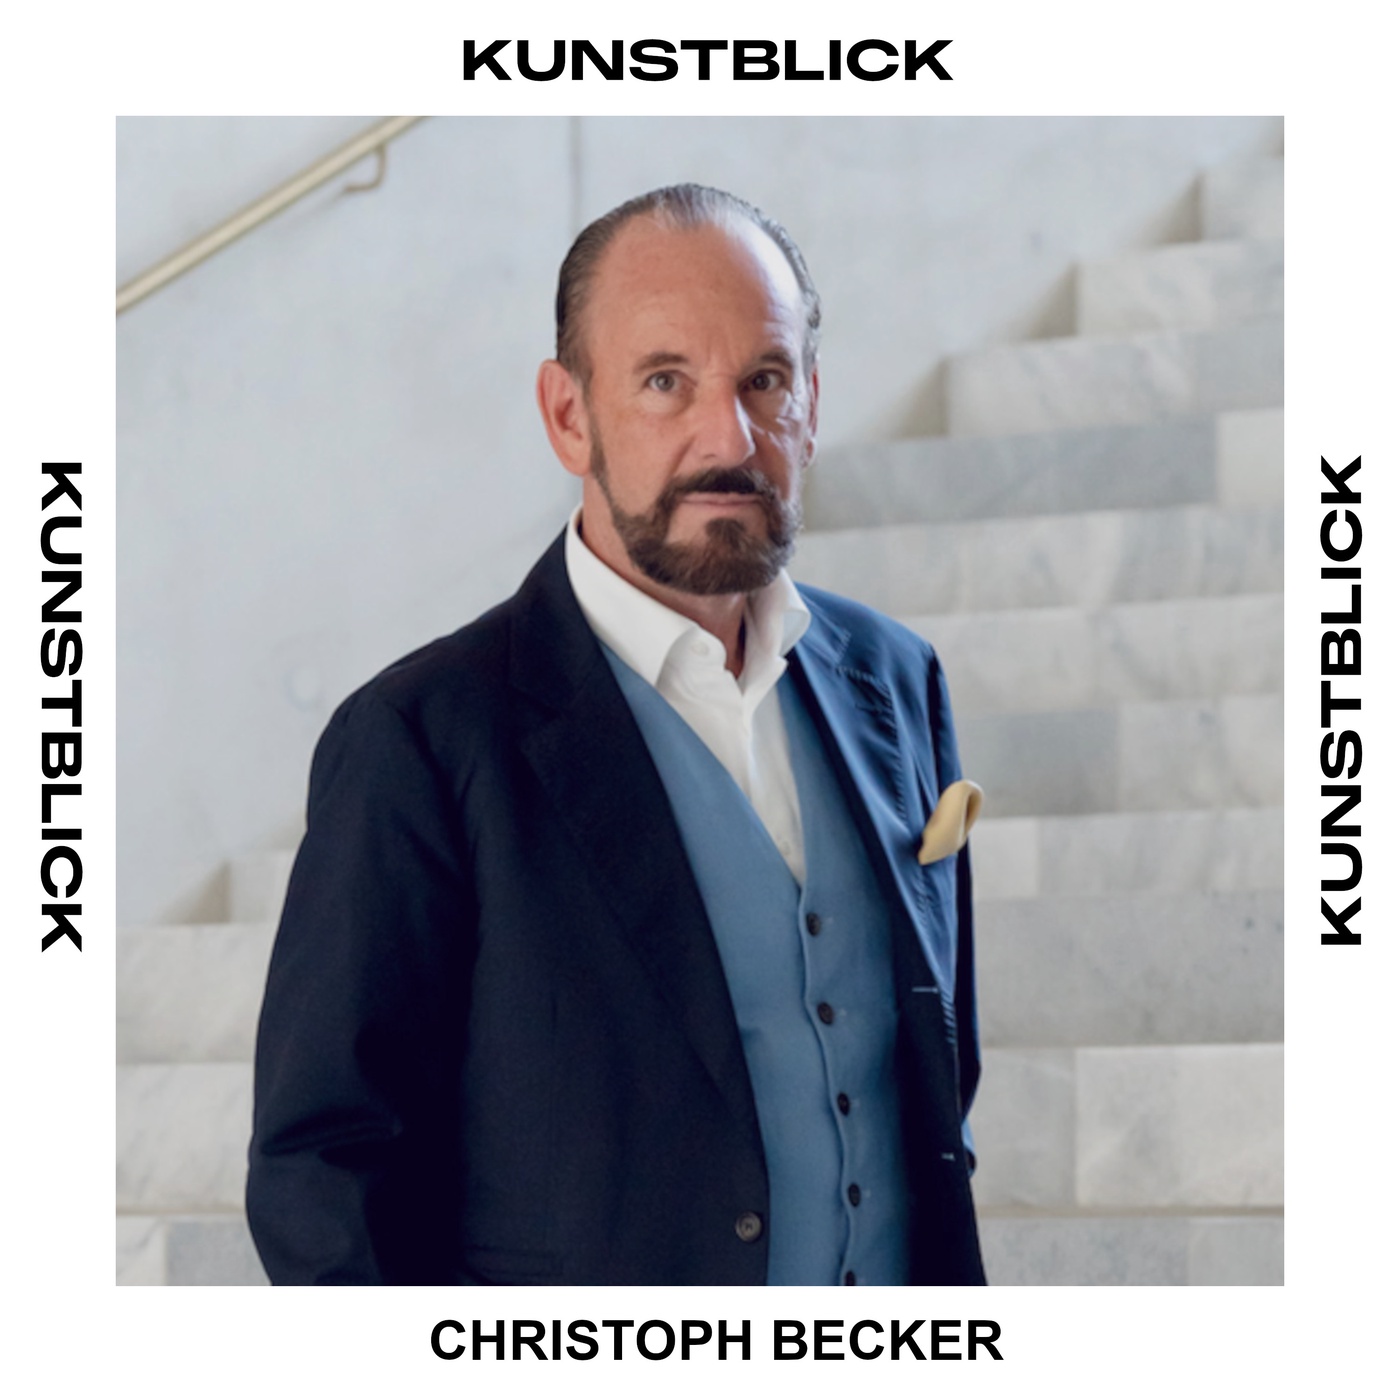 Christoph Becker - Kunstbeirat Sammlung Würth